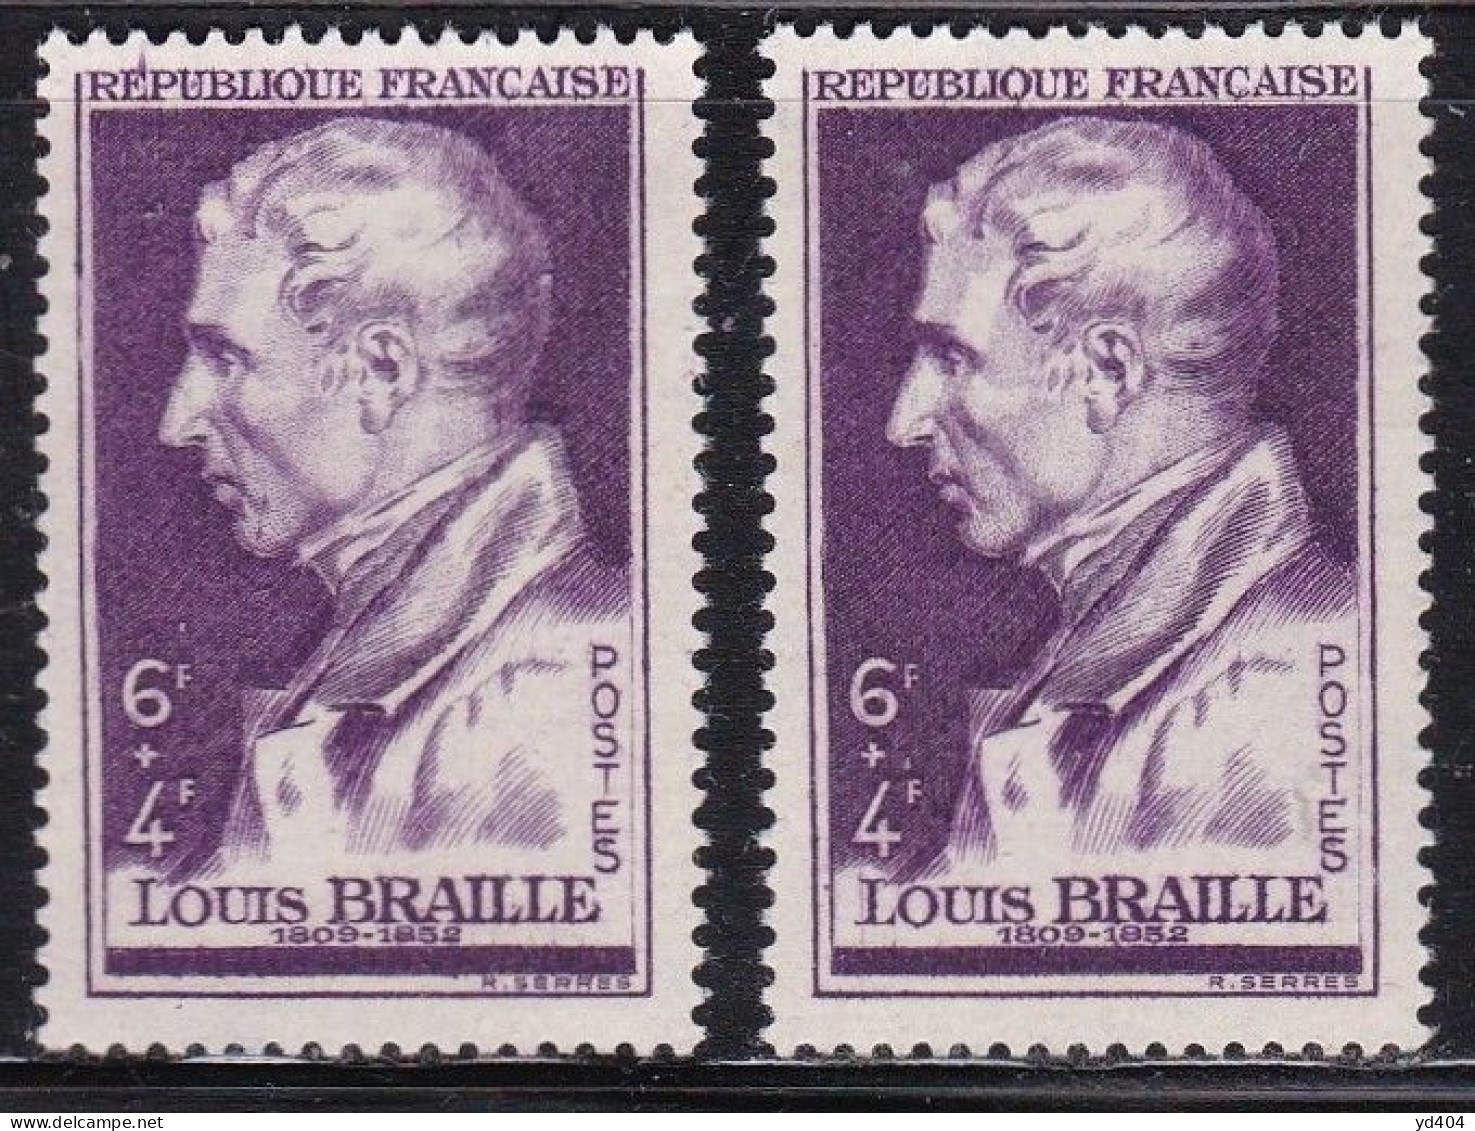 FR7143 - FRANCE – 1947 – L. BRAILLE - Y&T # 793(x2) MNH - Nuevos